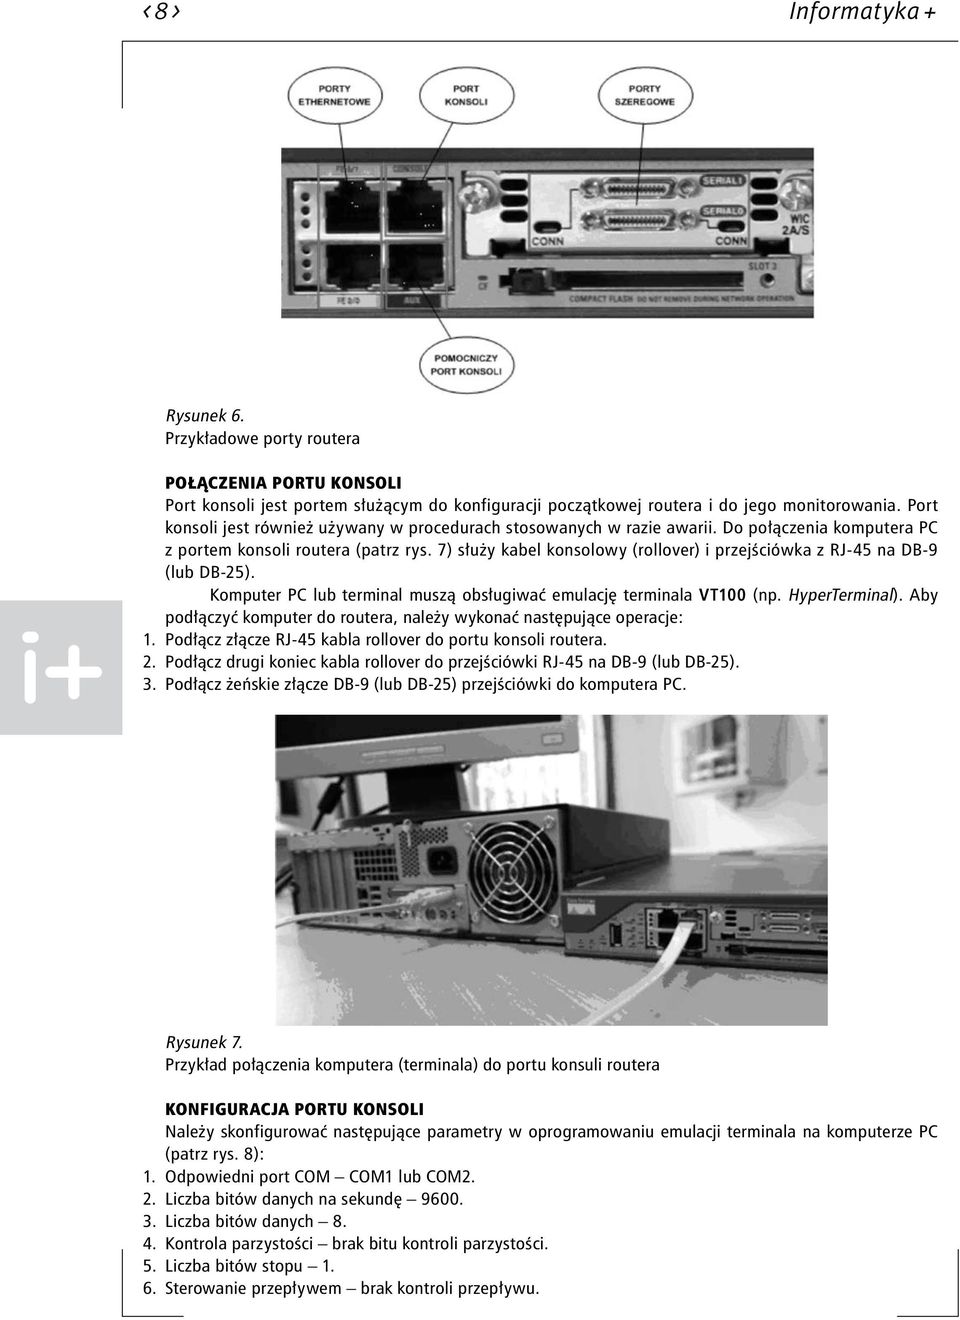 7) służy kabel konsolowy (rollover) i przejściówka z RJ-45 na DB-9 (lub DB-25). Komputer PC lub terminal muszą obsługiwać emulację terminala VT100 (np. HyperTerminal).